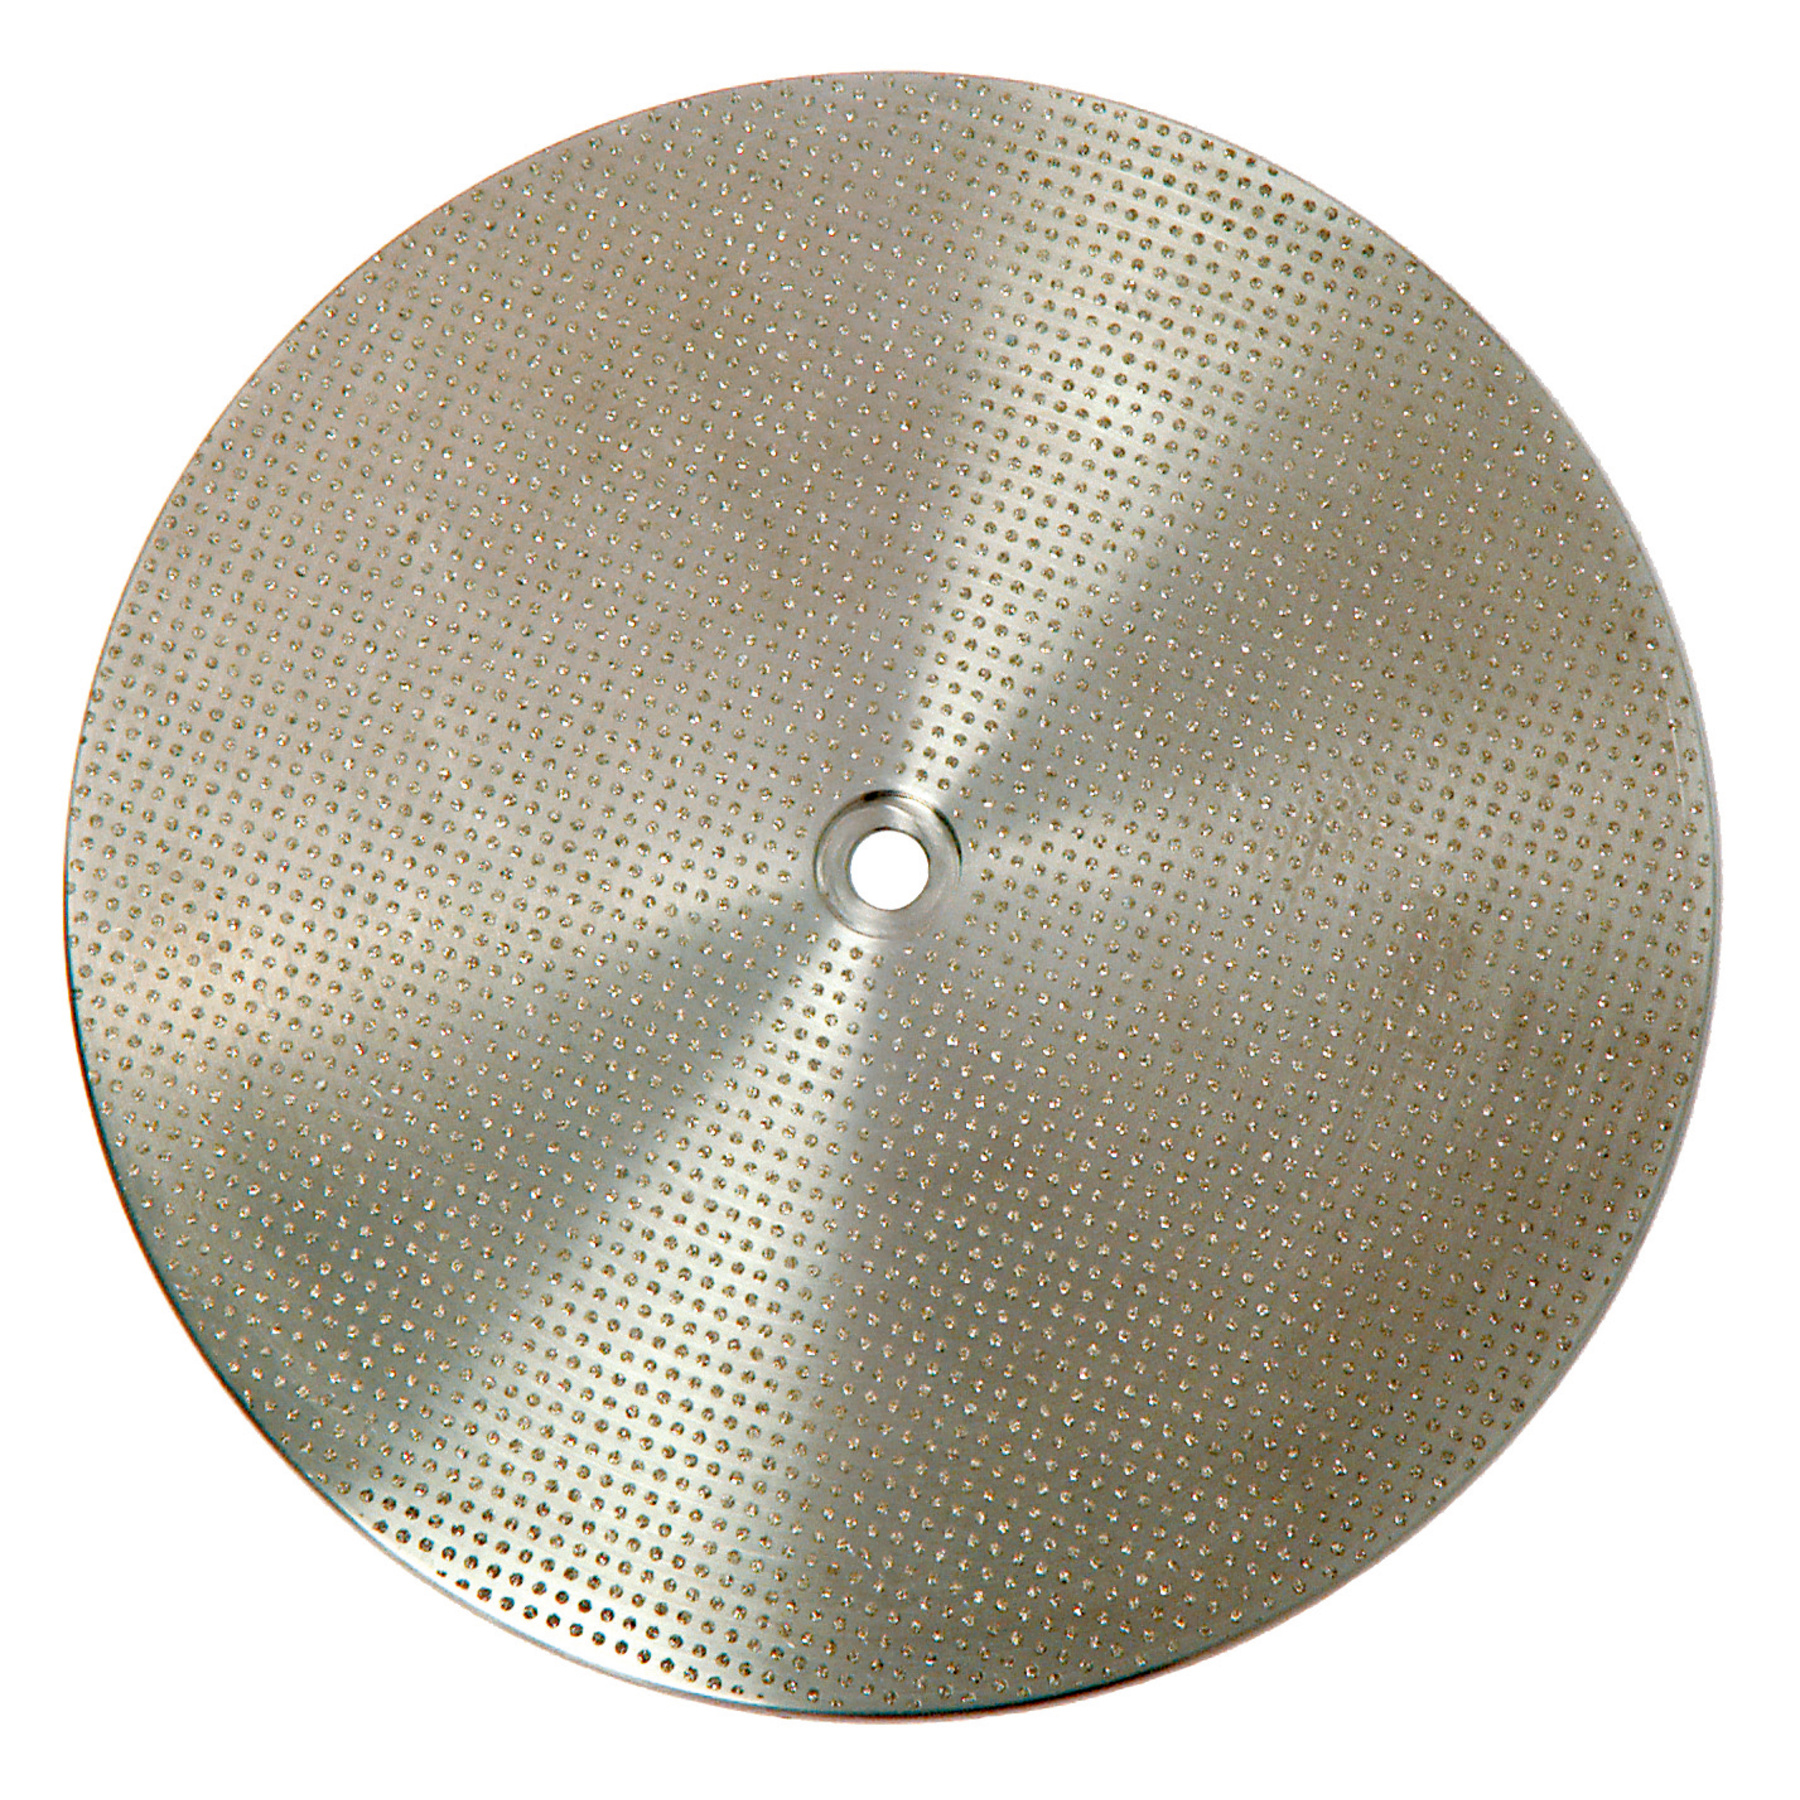 Триммер MT 3 с диском Marathon для мокрой обработки Renfert 18080500